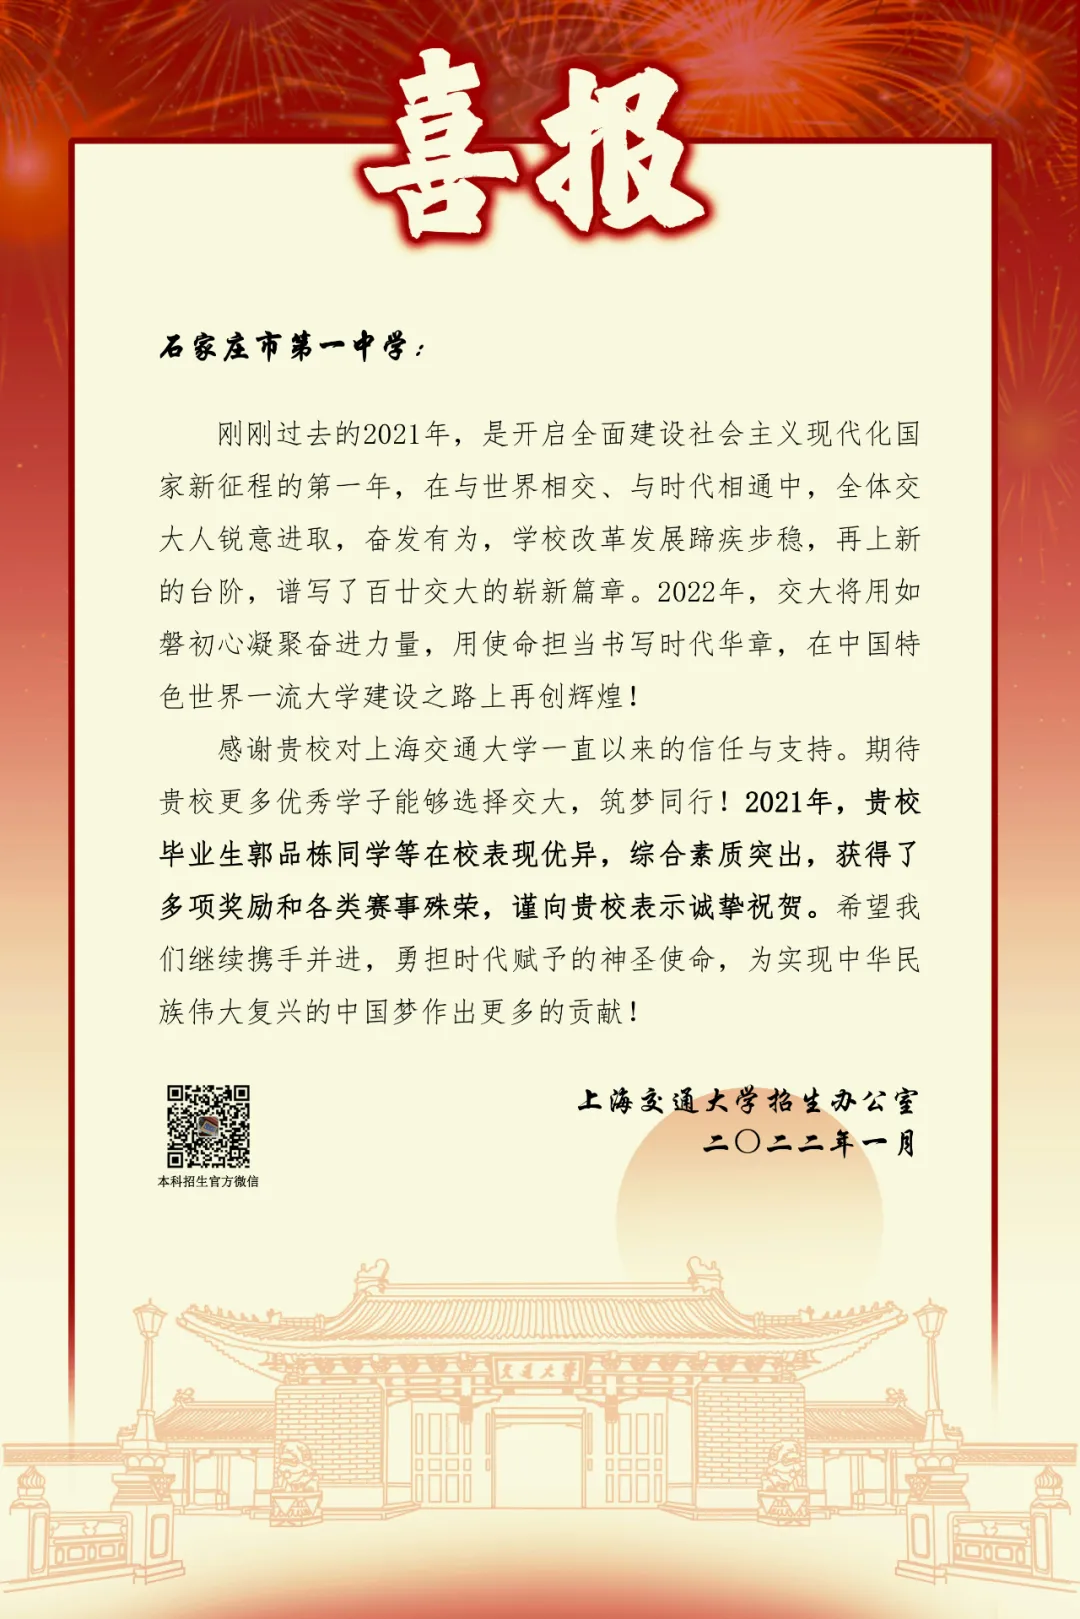 【喜报】上海交通大学向优德88俱乐部w优德88-信誉保证发来喜报